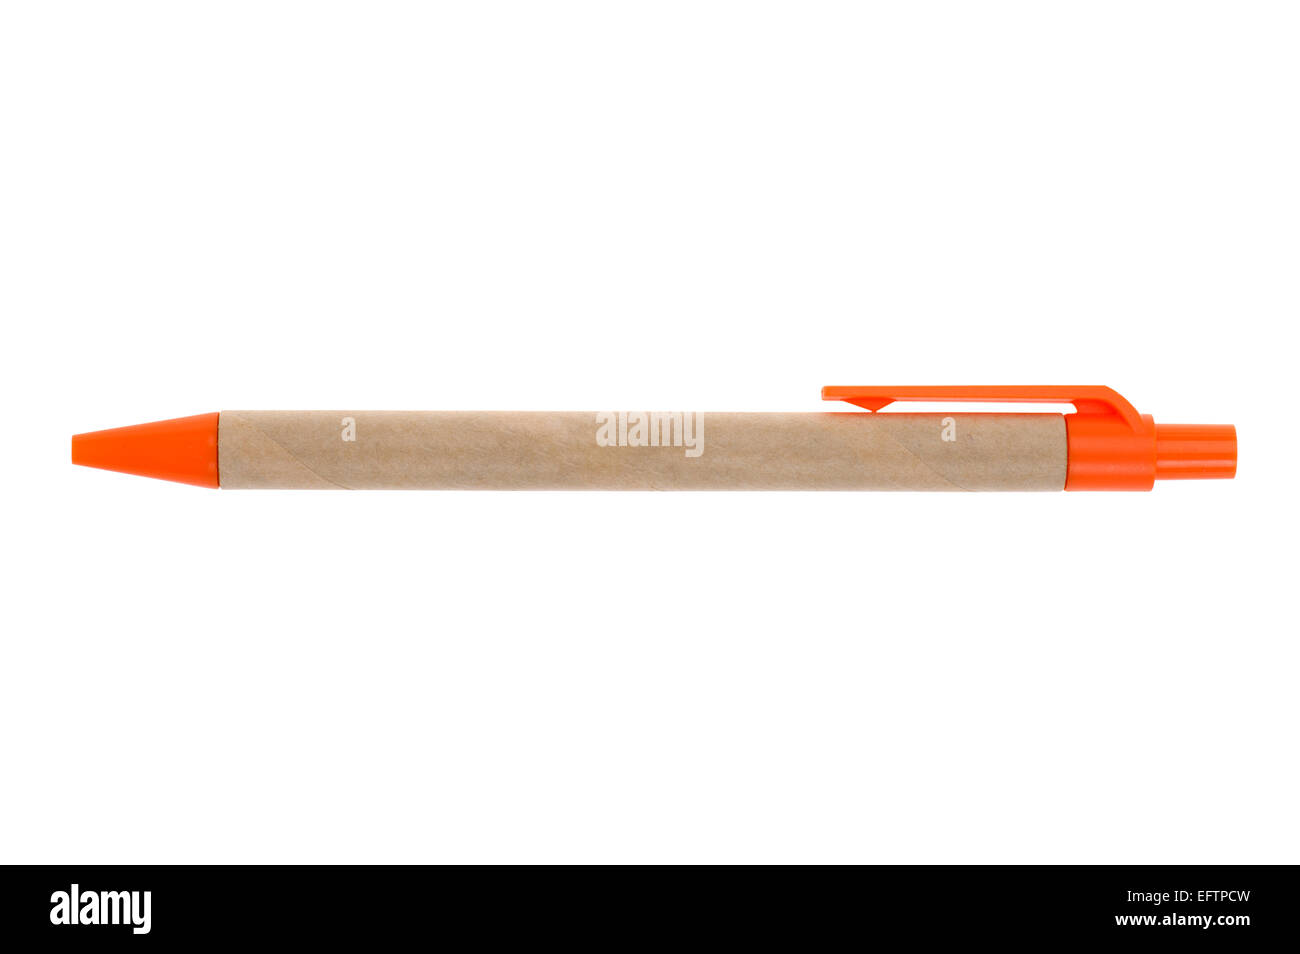 isoliertes Objekt auf weiß - Kollektion Kugelschreiber Stockfoto